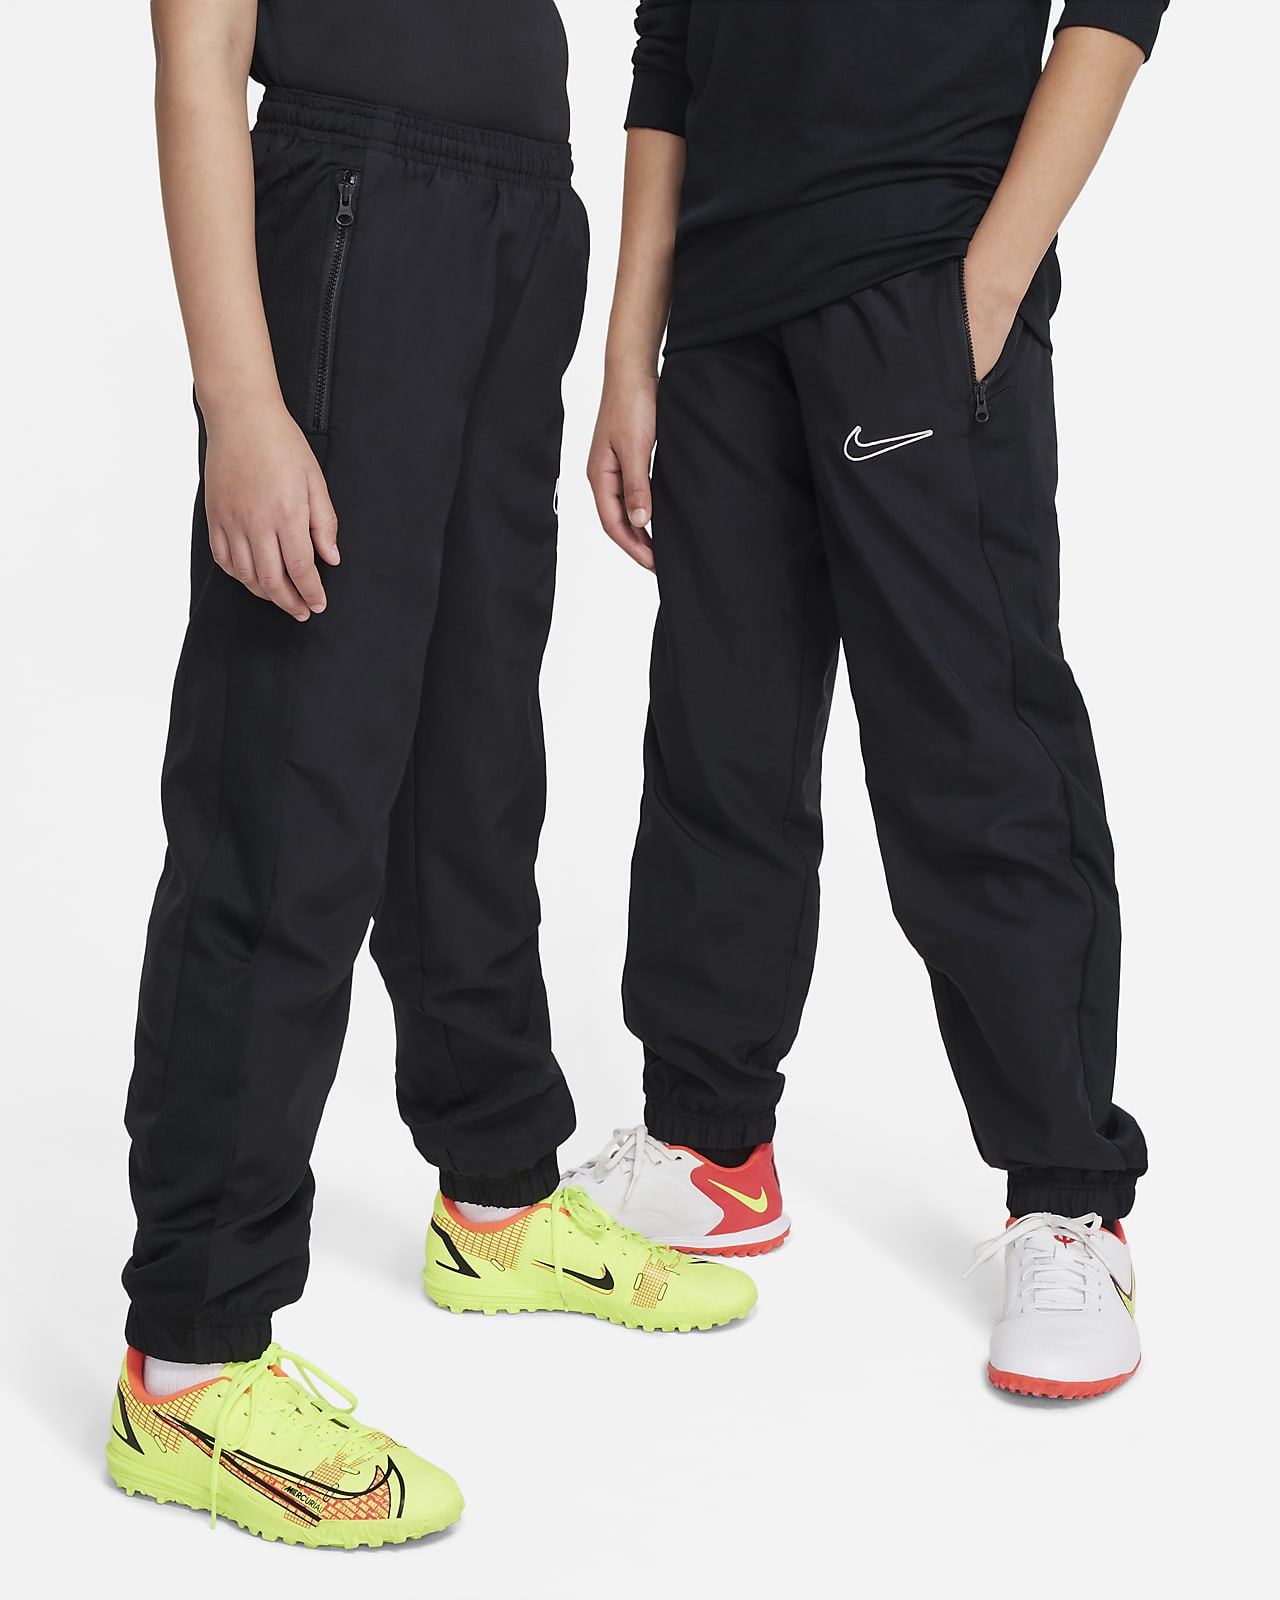 Ποδοσφαιρικό παντελόνι Nike Dri-FIT Academy23 για μεγάλα παιδιά